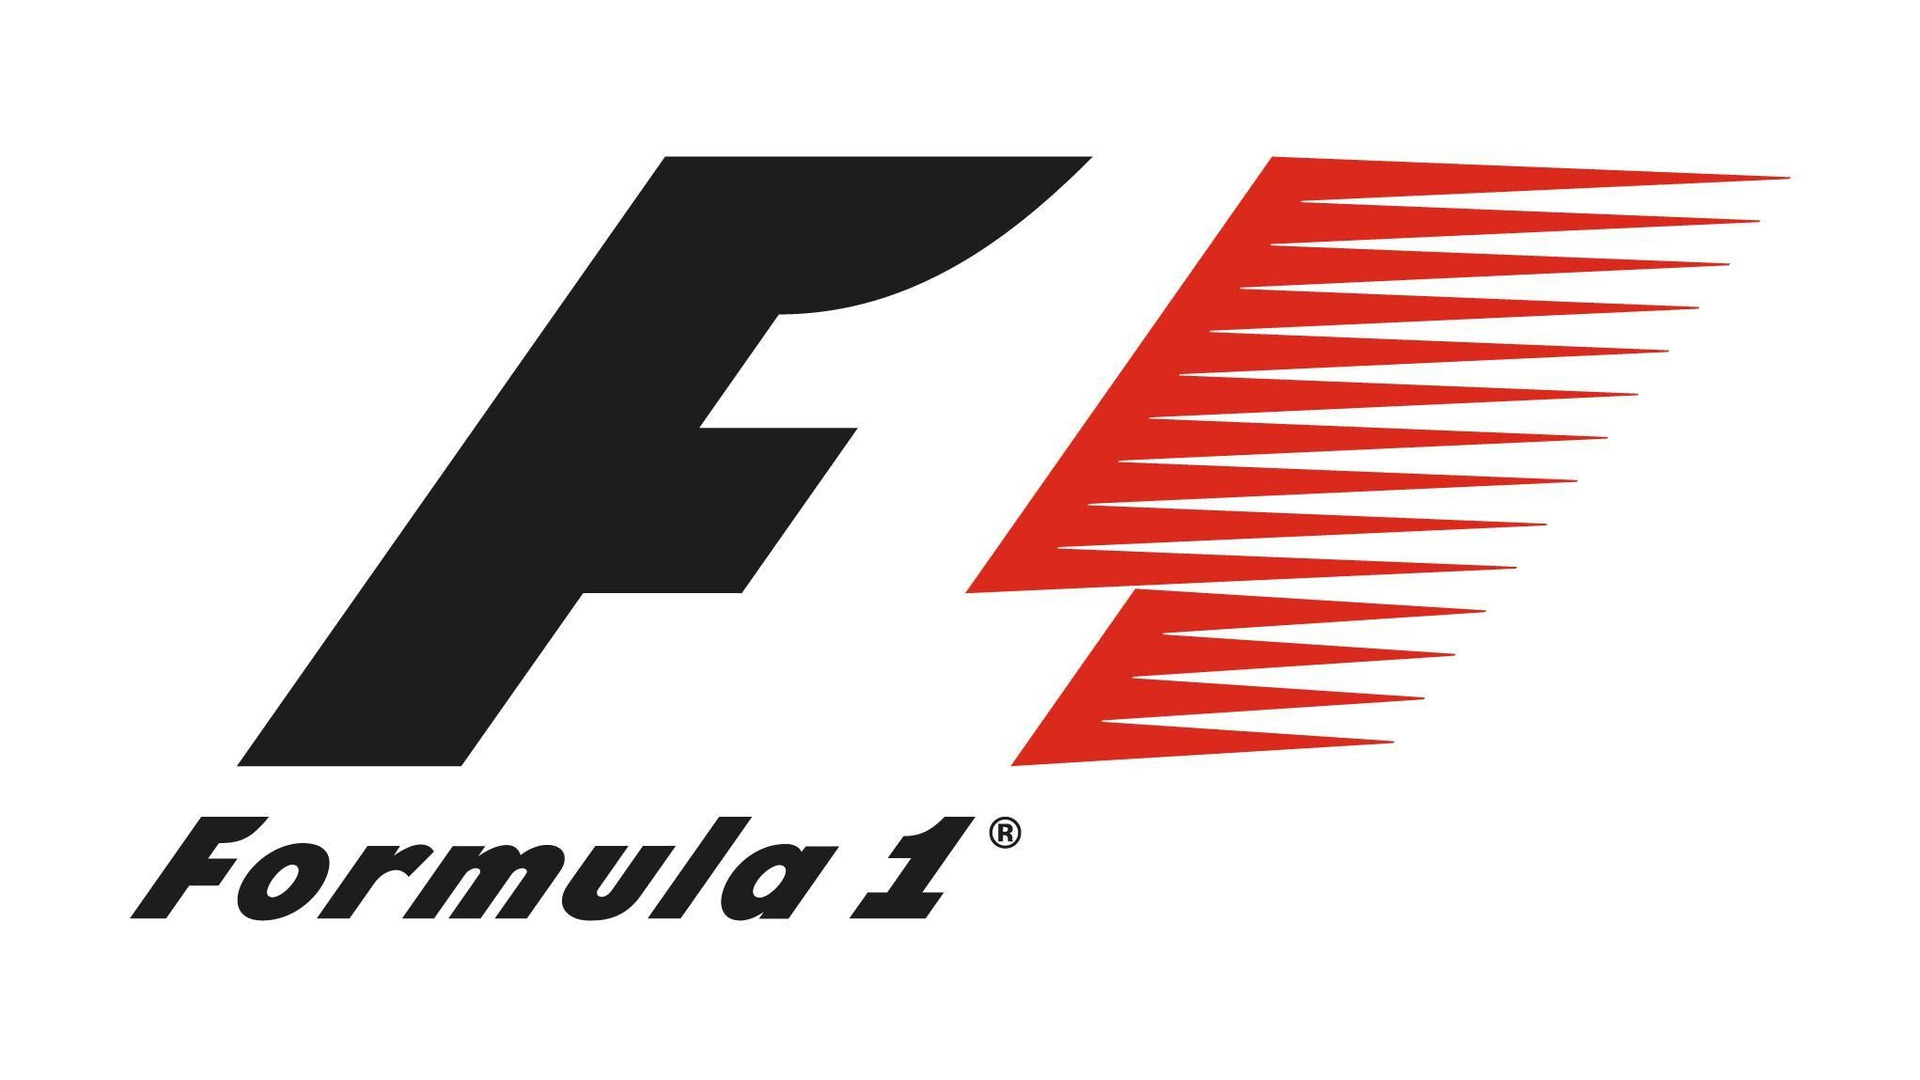 Show Formula 1 (1993-2016)